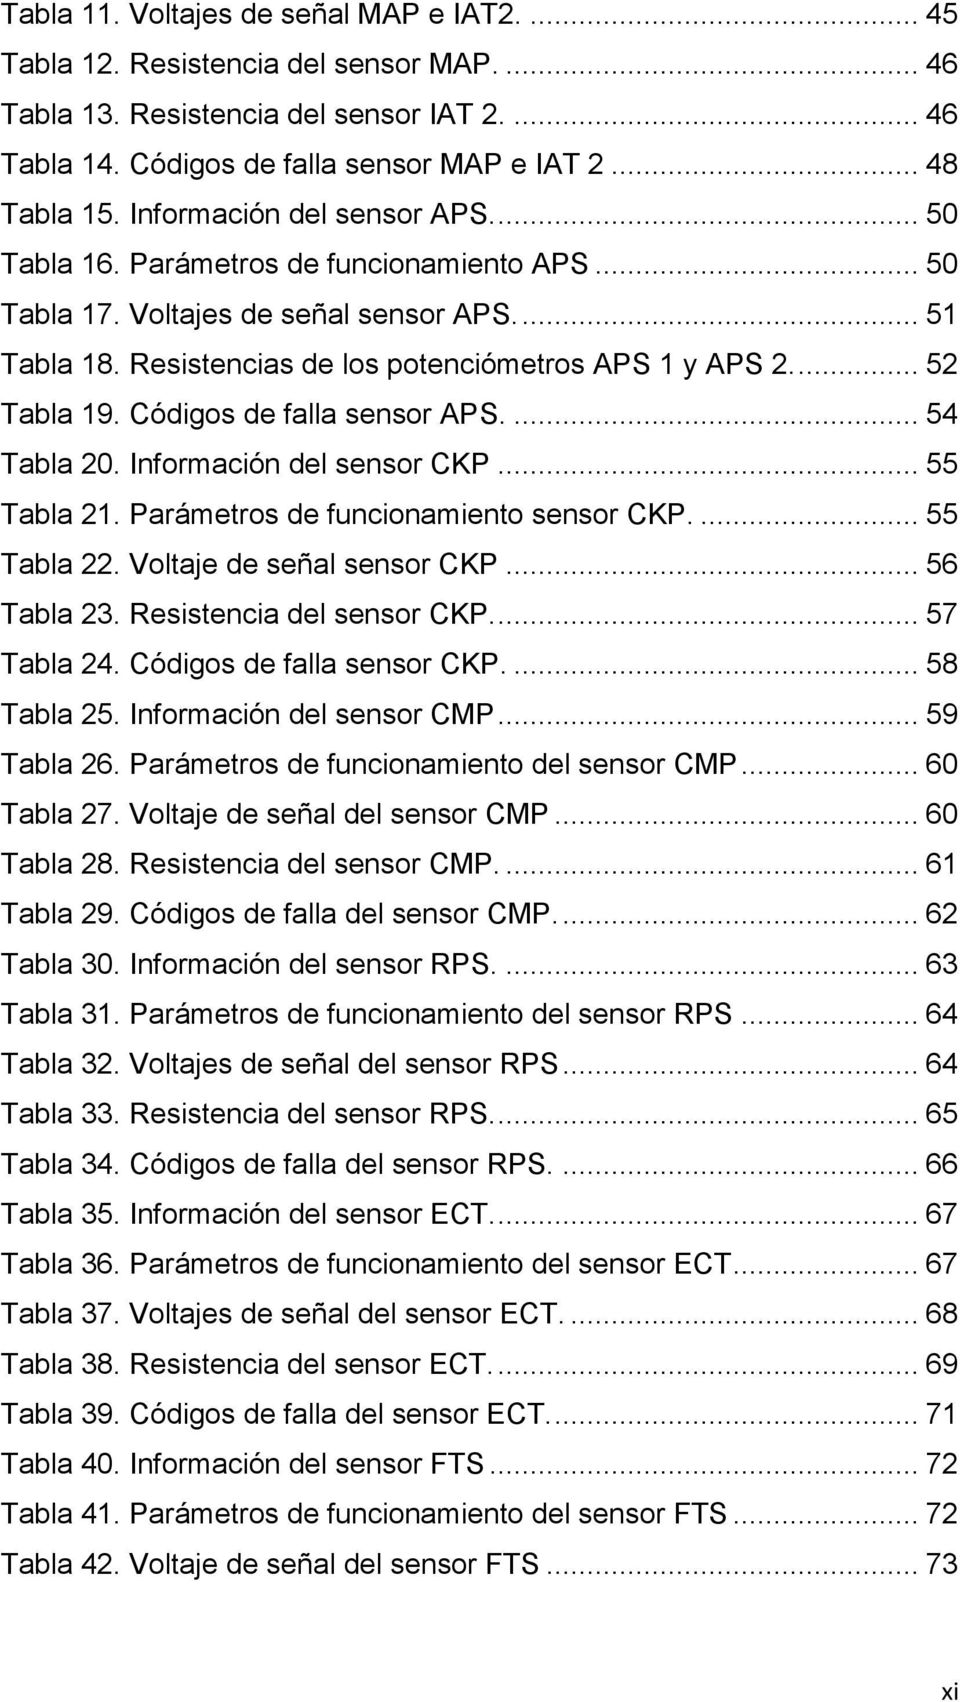 ... 52 Tabla 19. Códigos de falla sensor APS.... 54 Tabla 20. Información del sensor CKP... 55 Tabla 21. Parámetros de funcionamiento sensor CKP.... 55 Tabla 22. Voltaje de señal sensor CKP.